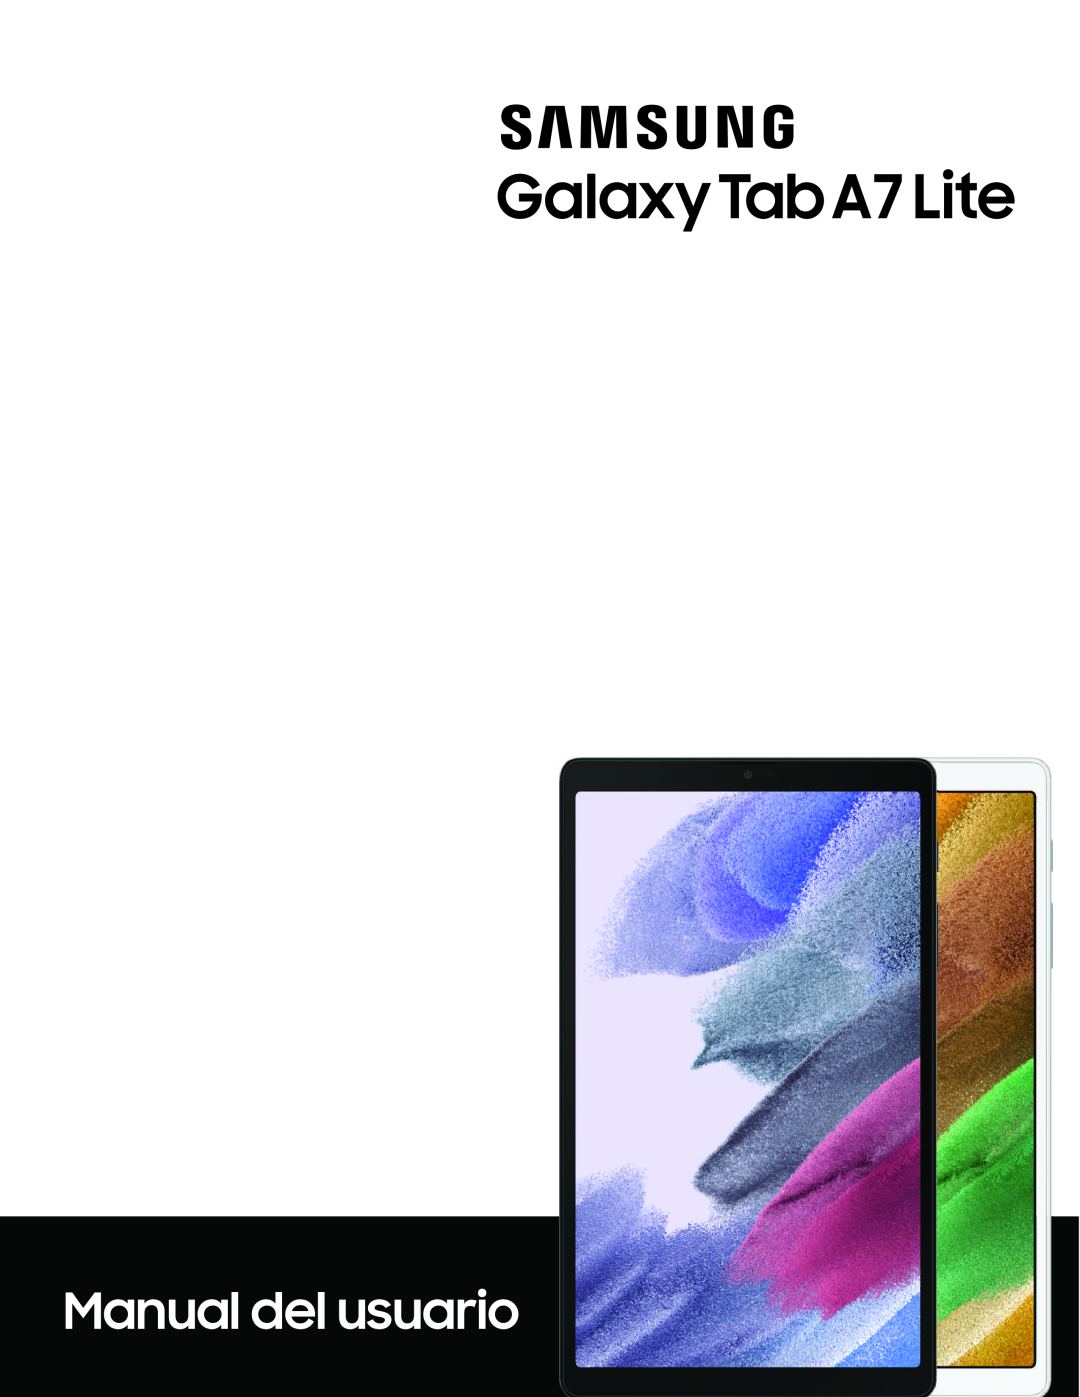 Galaxy Tab A7 Lite US Cellular